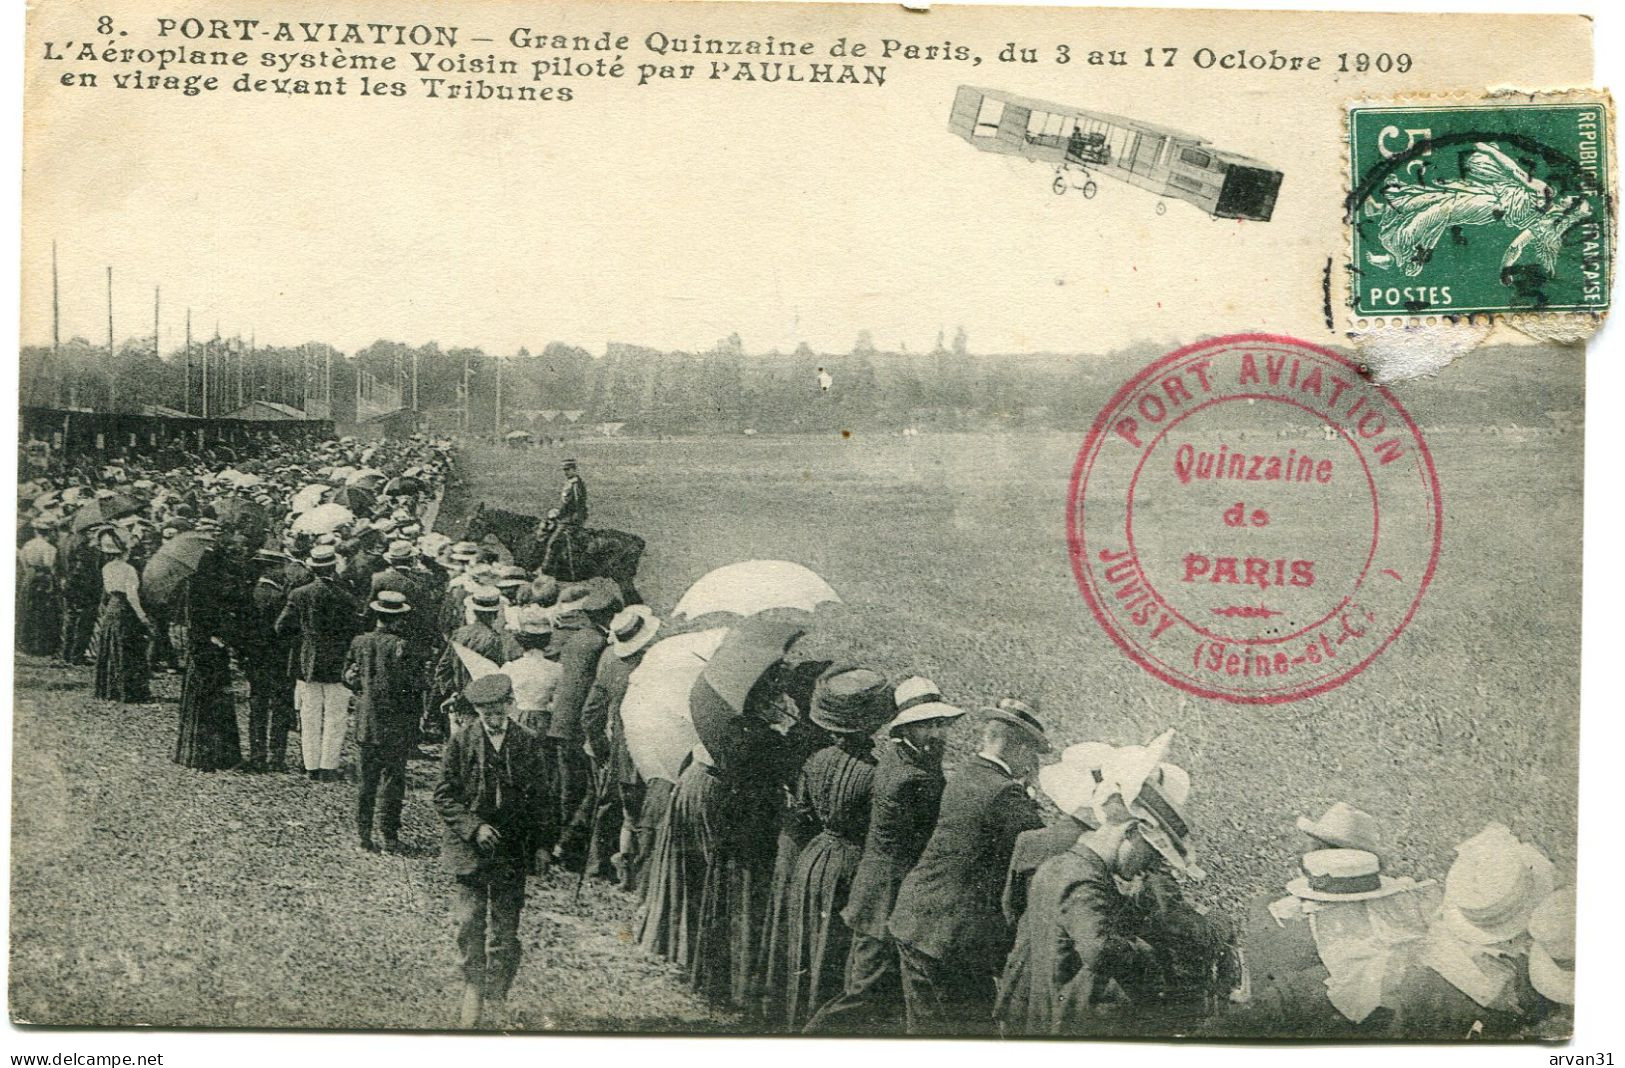 PORT AVIATION - GRANDE QUINZAINE De PARIS - Les 3 Et OCT 1909 - L' AEROPLANE SYSTME VOISIN - BEAU CACHET PORT AVIATION - Meetings